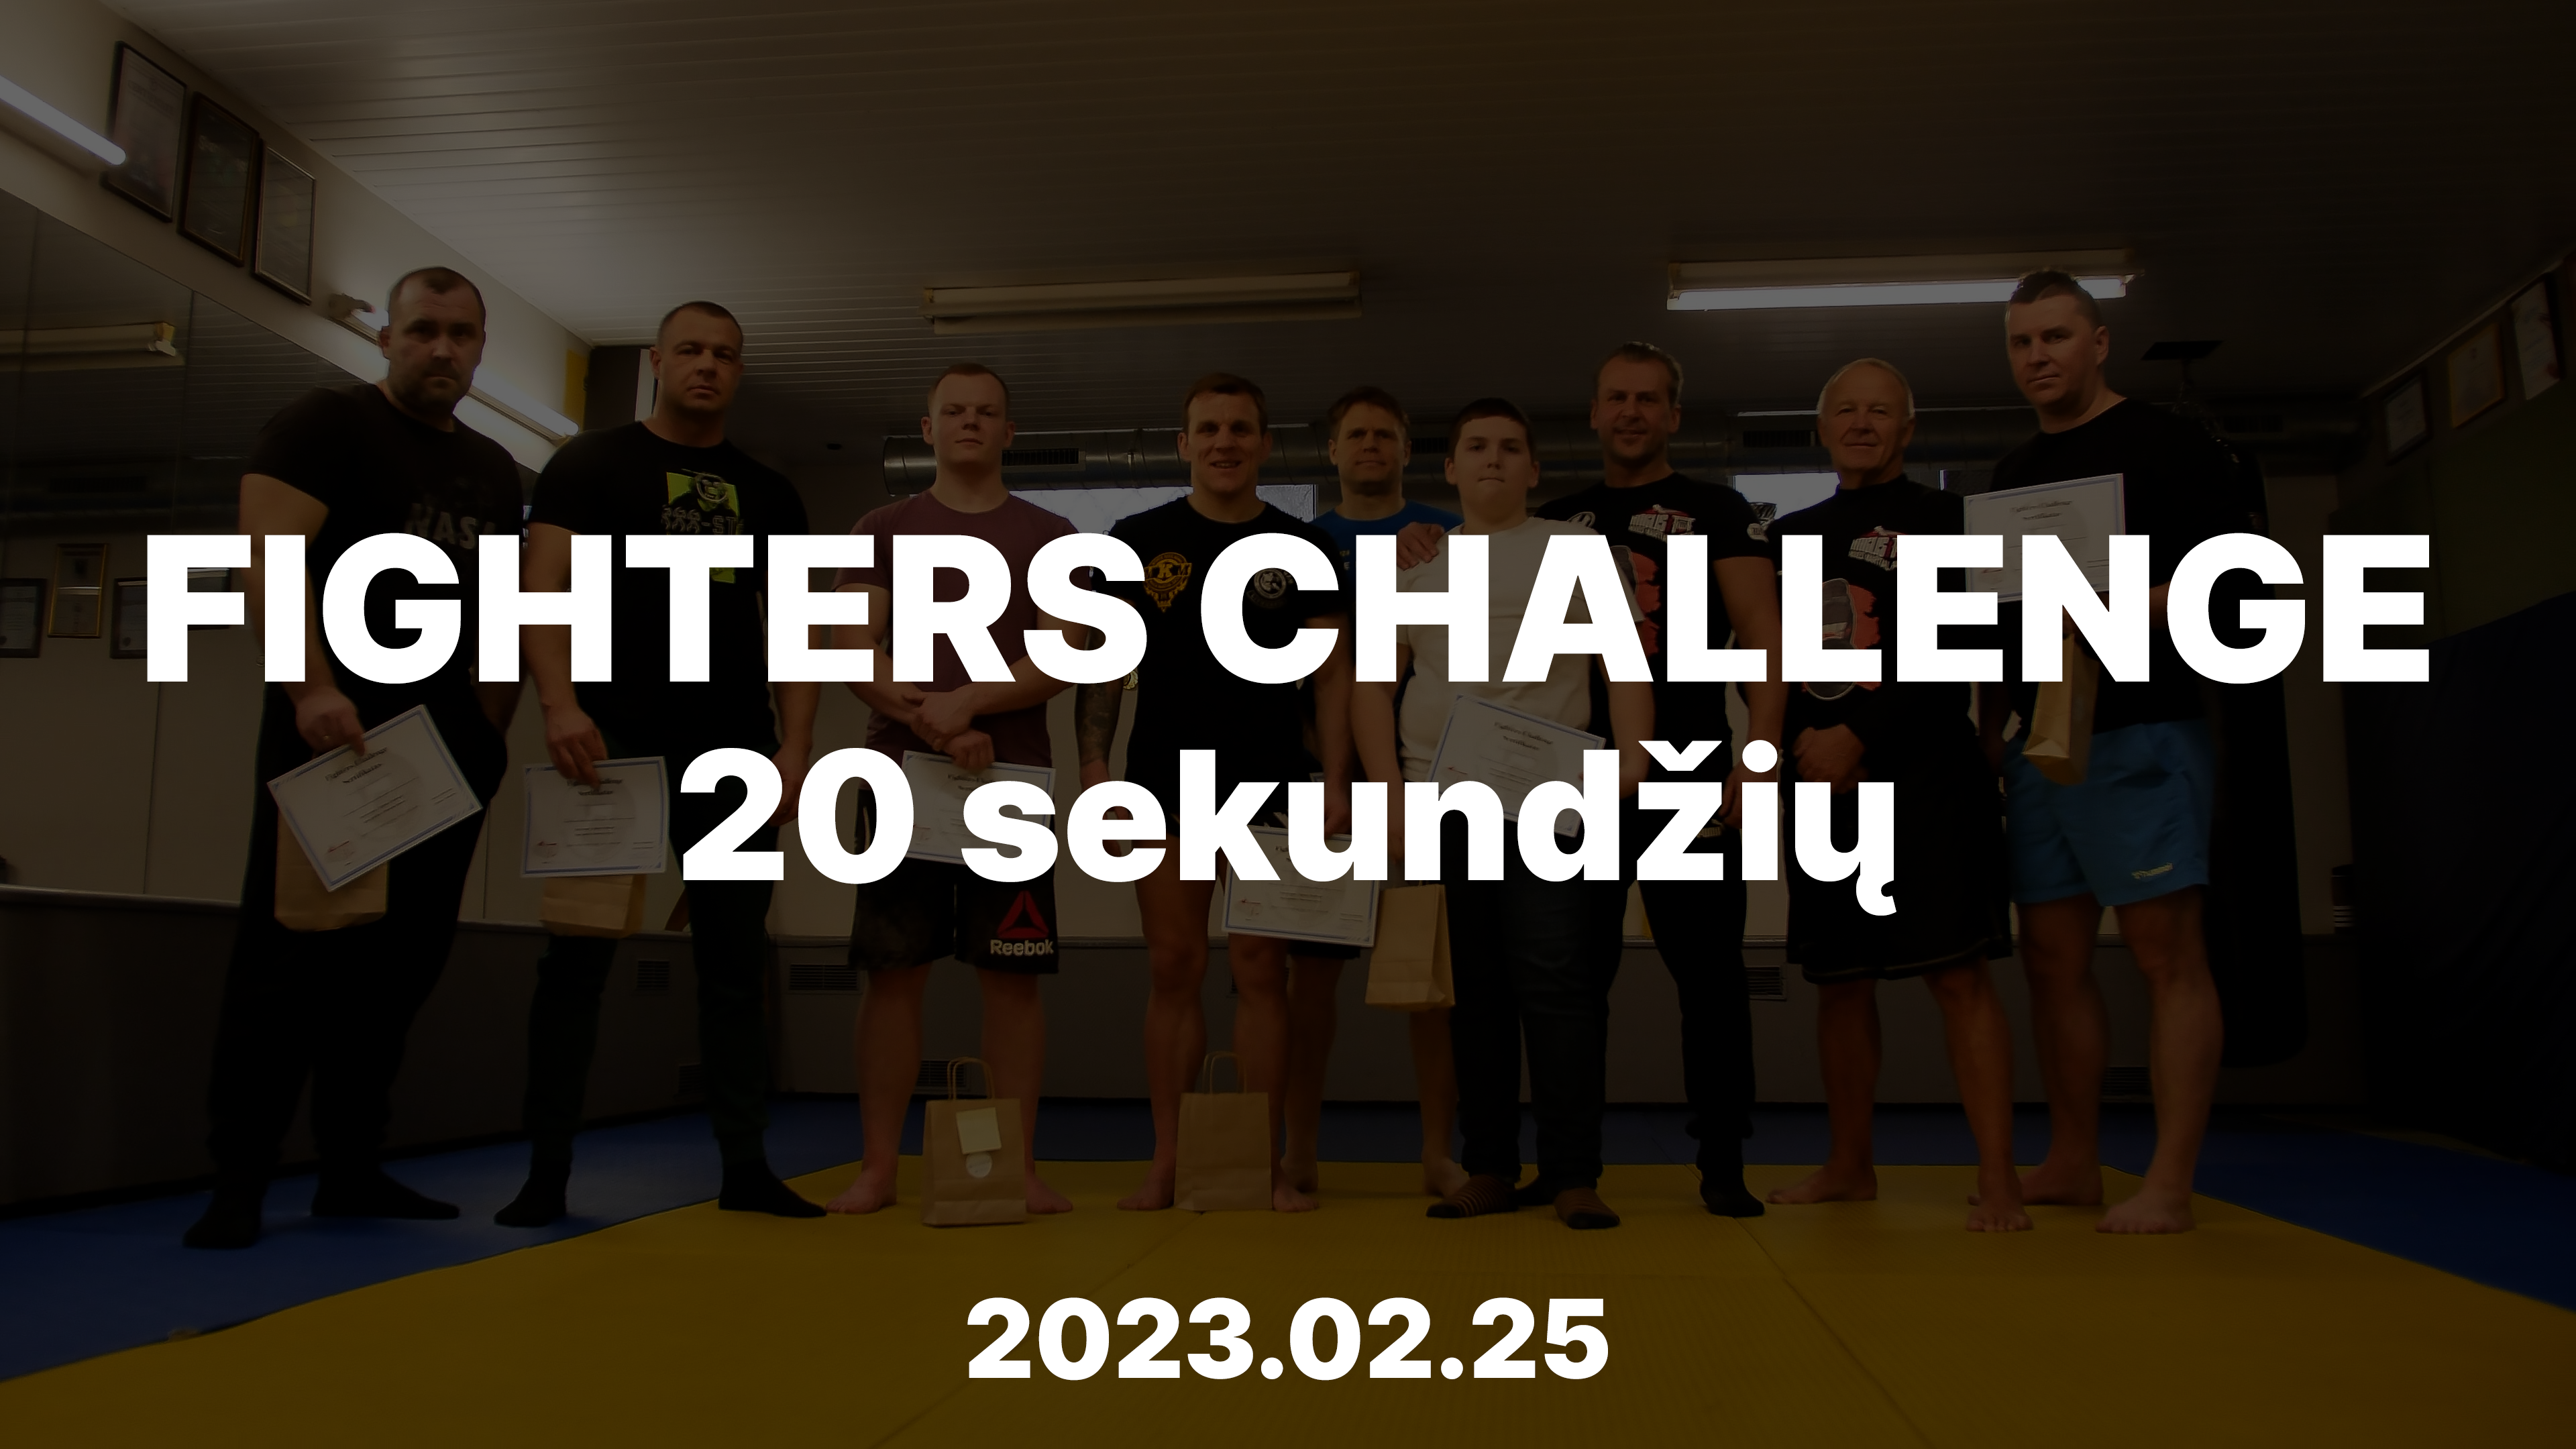 Fighters Challenge 20 sekundžių varžybos 2023.02.25